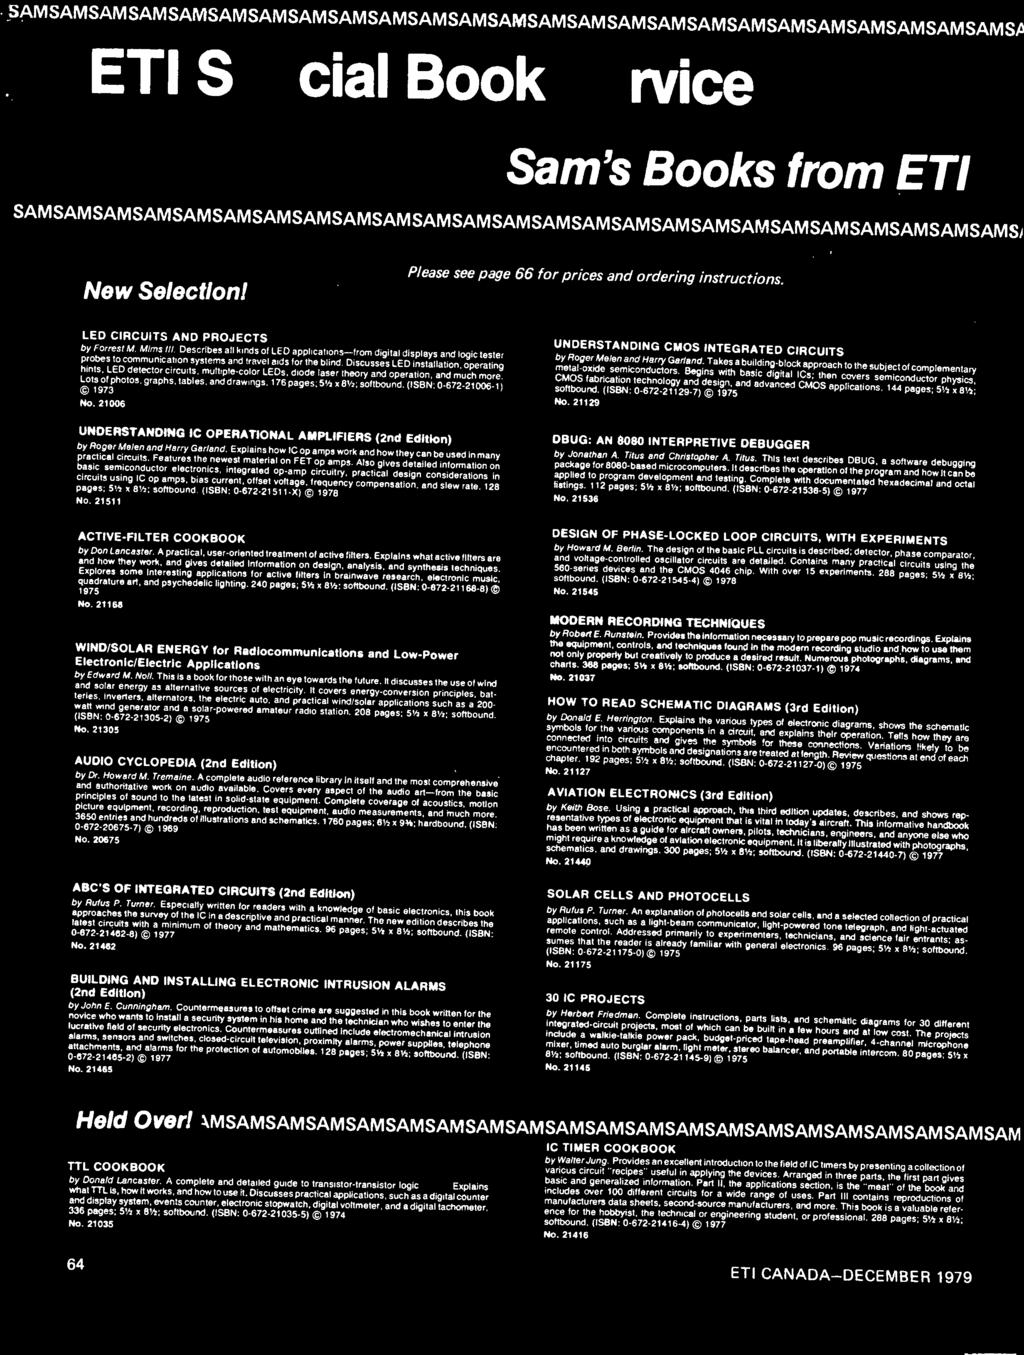 SAMSAMSAMSAMSAMSAMSAMSAMSAMSAMSAMSAMSAMSAMSAMSAMSAMSAMSAMSAMSAMSAMSAMSAMSAMSA ETI Special Book Service Sam's Books from ETI